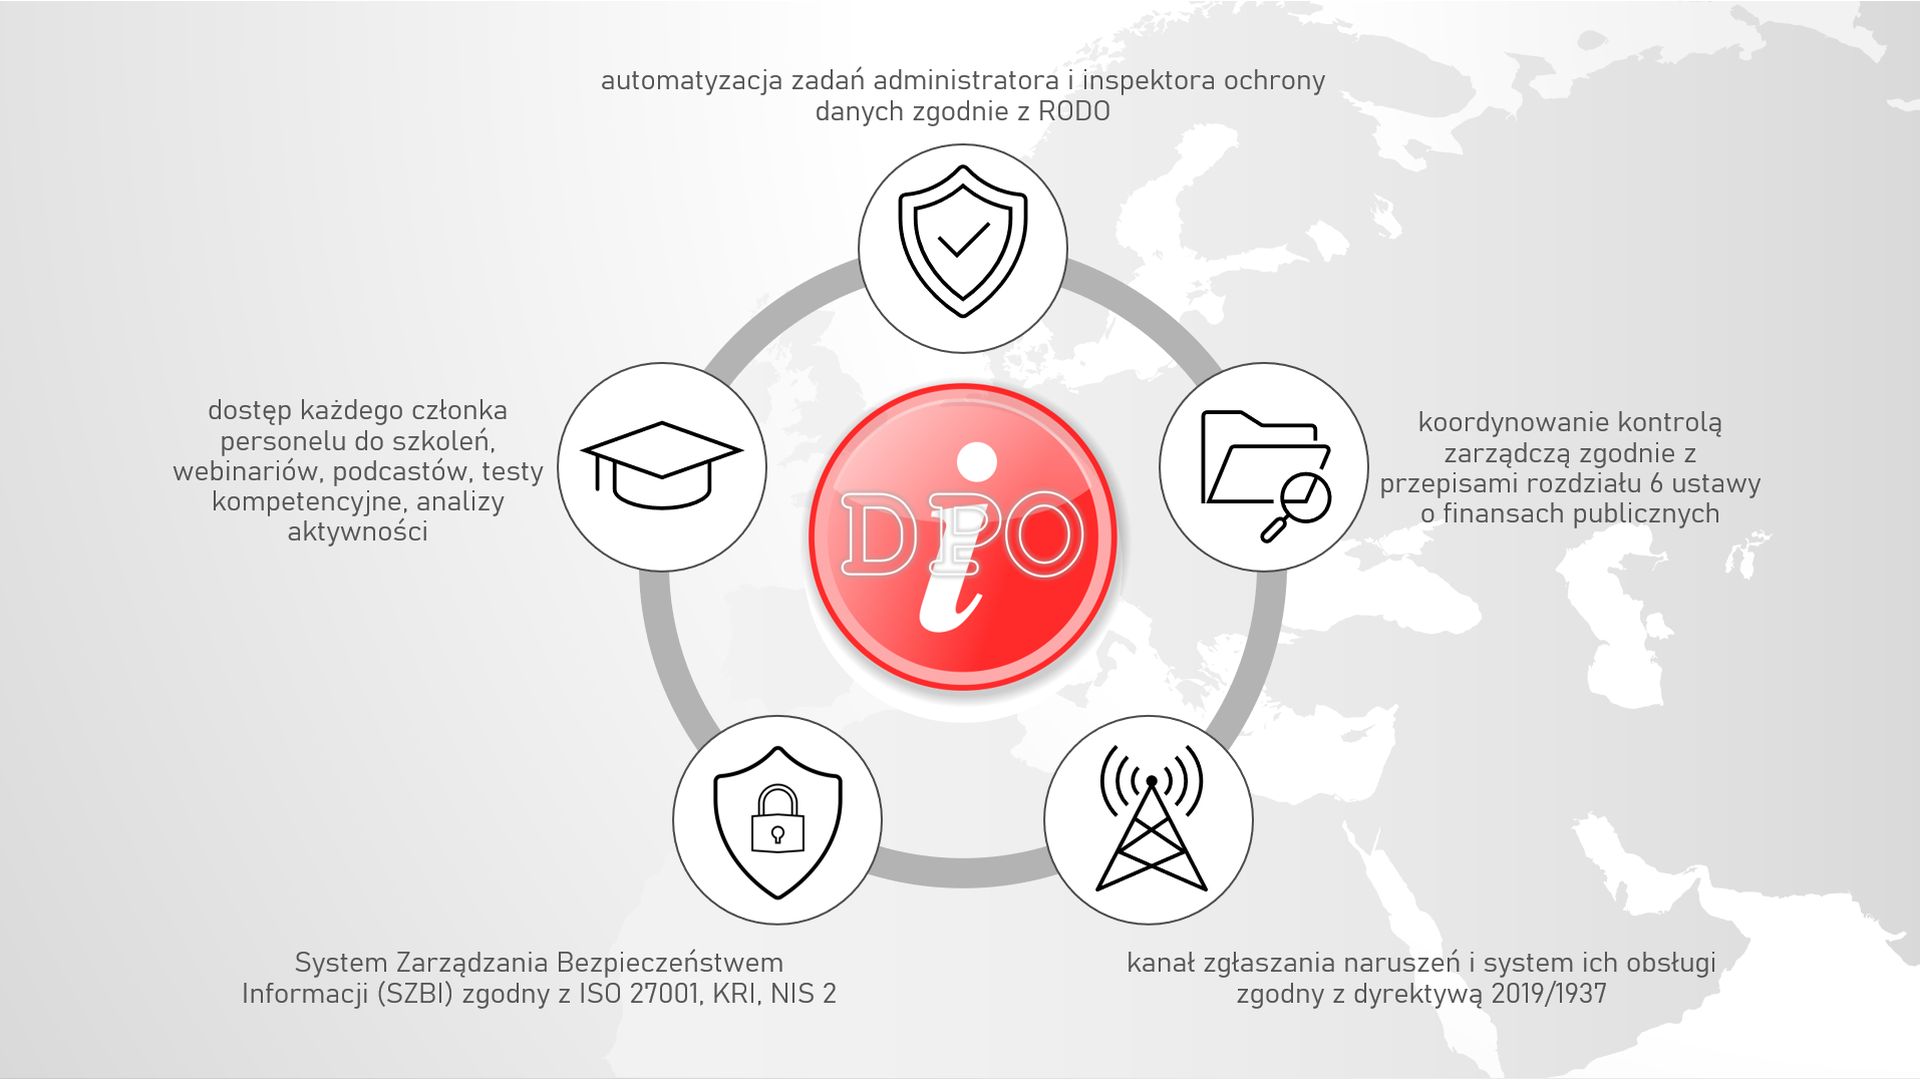 iDPO - hybrydowy system zarządzania bezpieczeństwem informacji, ochrony danych osobowych, kontroli zarządczej i obsługi naruszeń 1